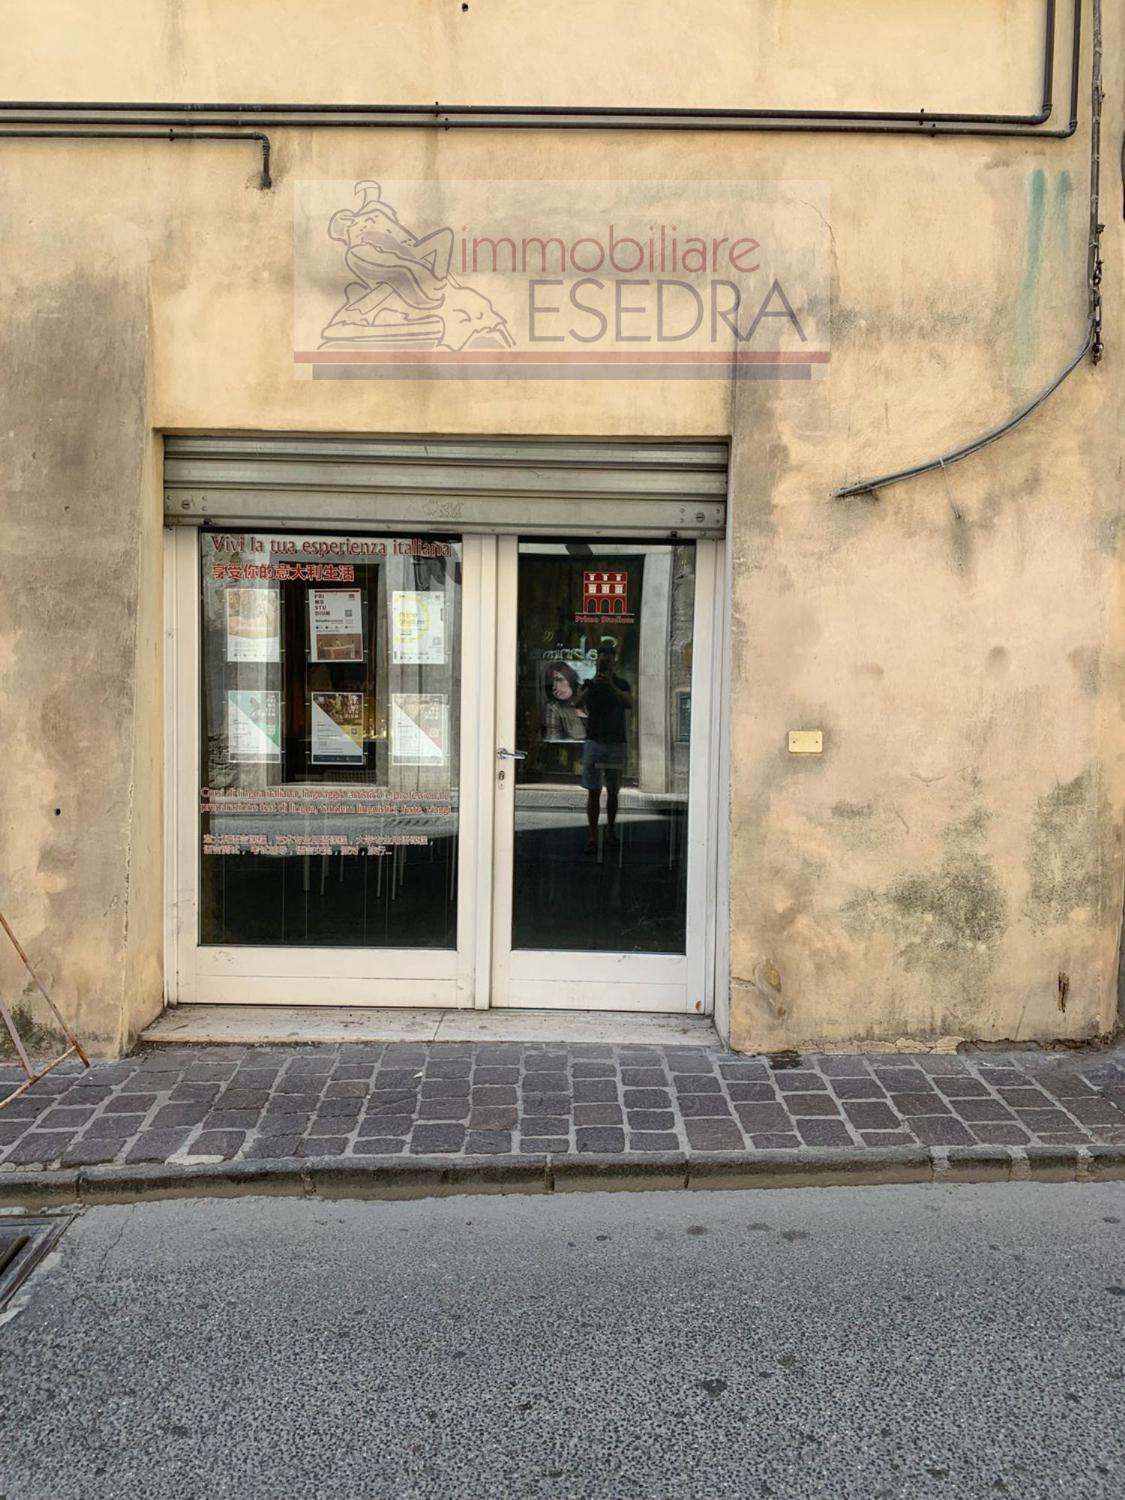 Locale Commerciale Perugia locale pinturicchio